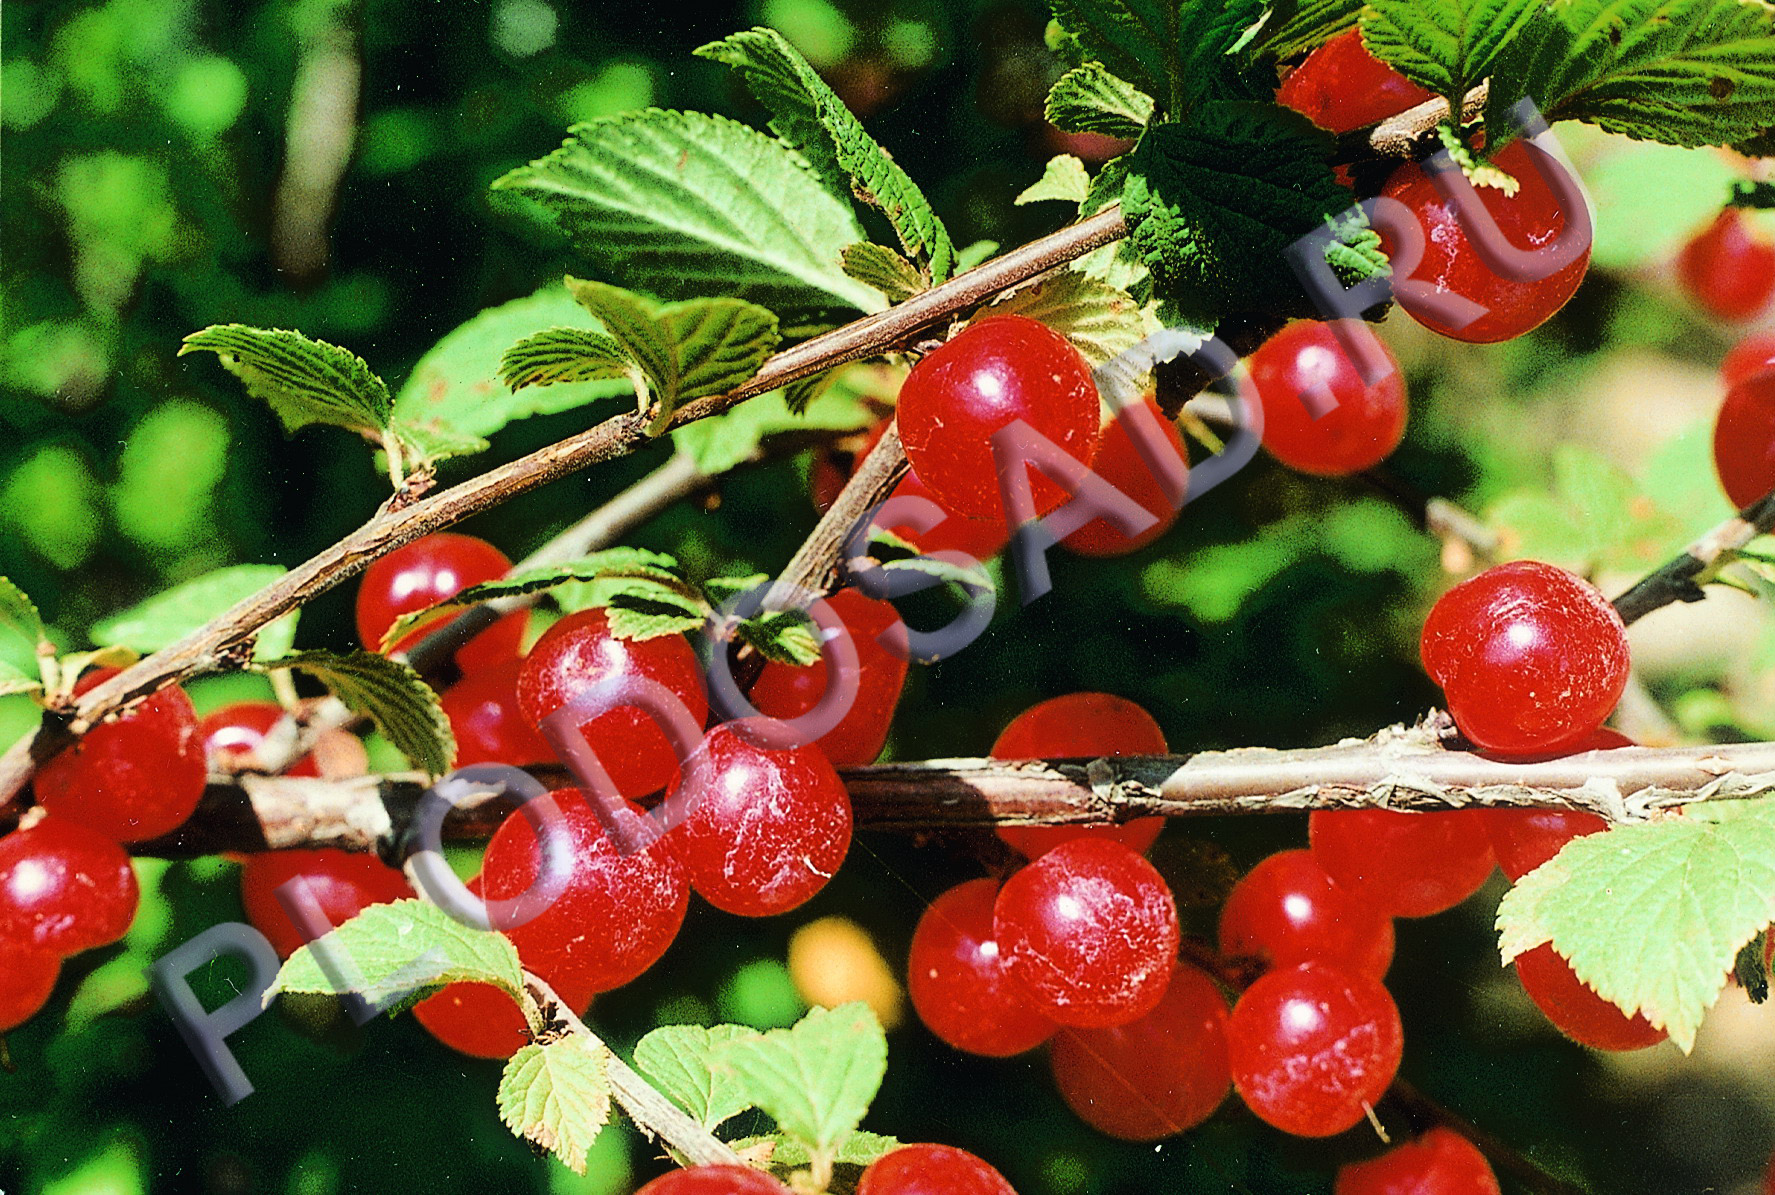 Войлочные вишни: лучшие сорта и правила выращивания